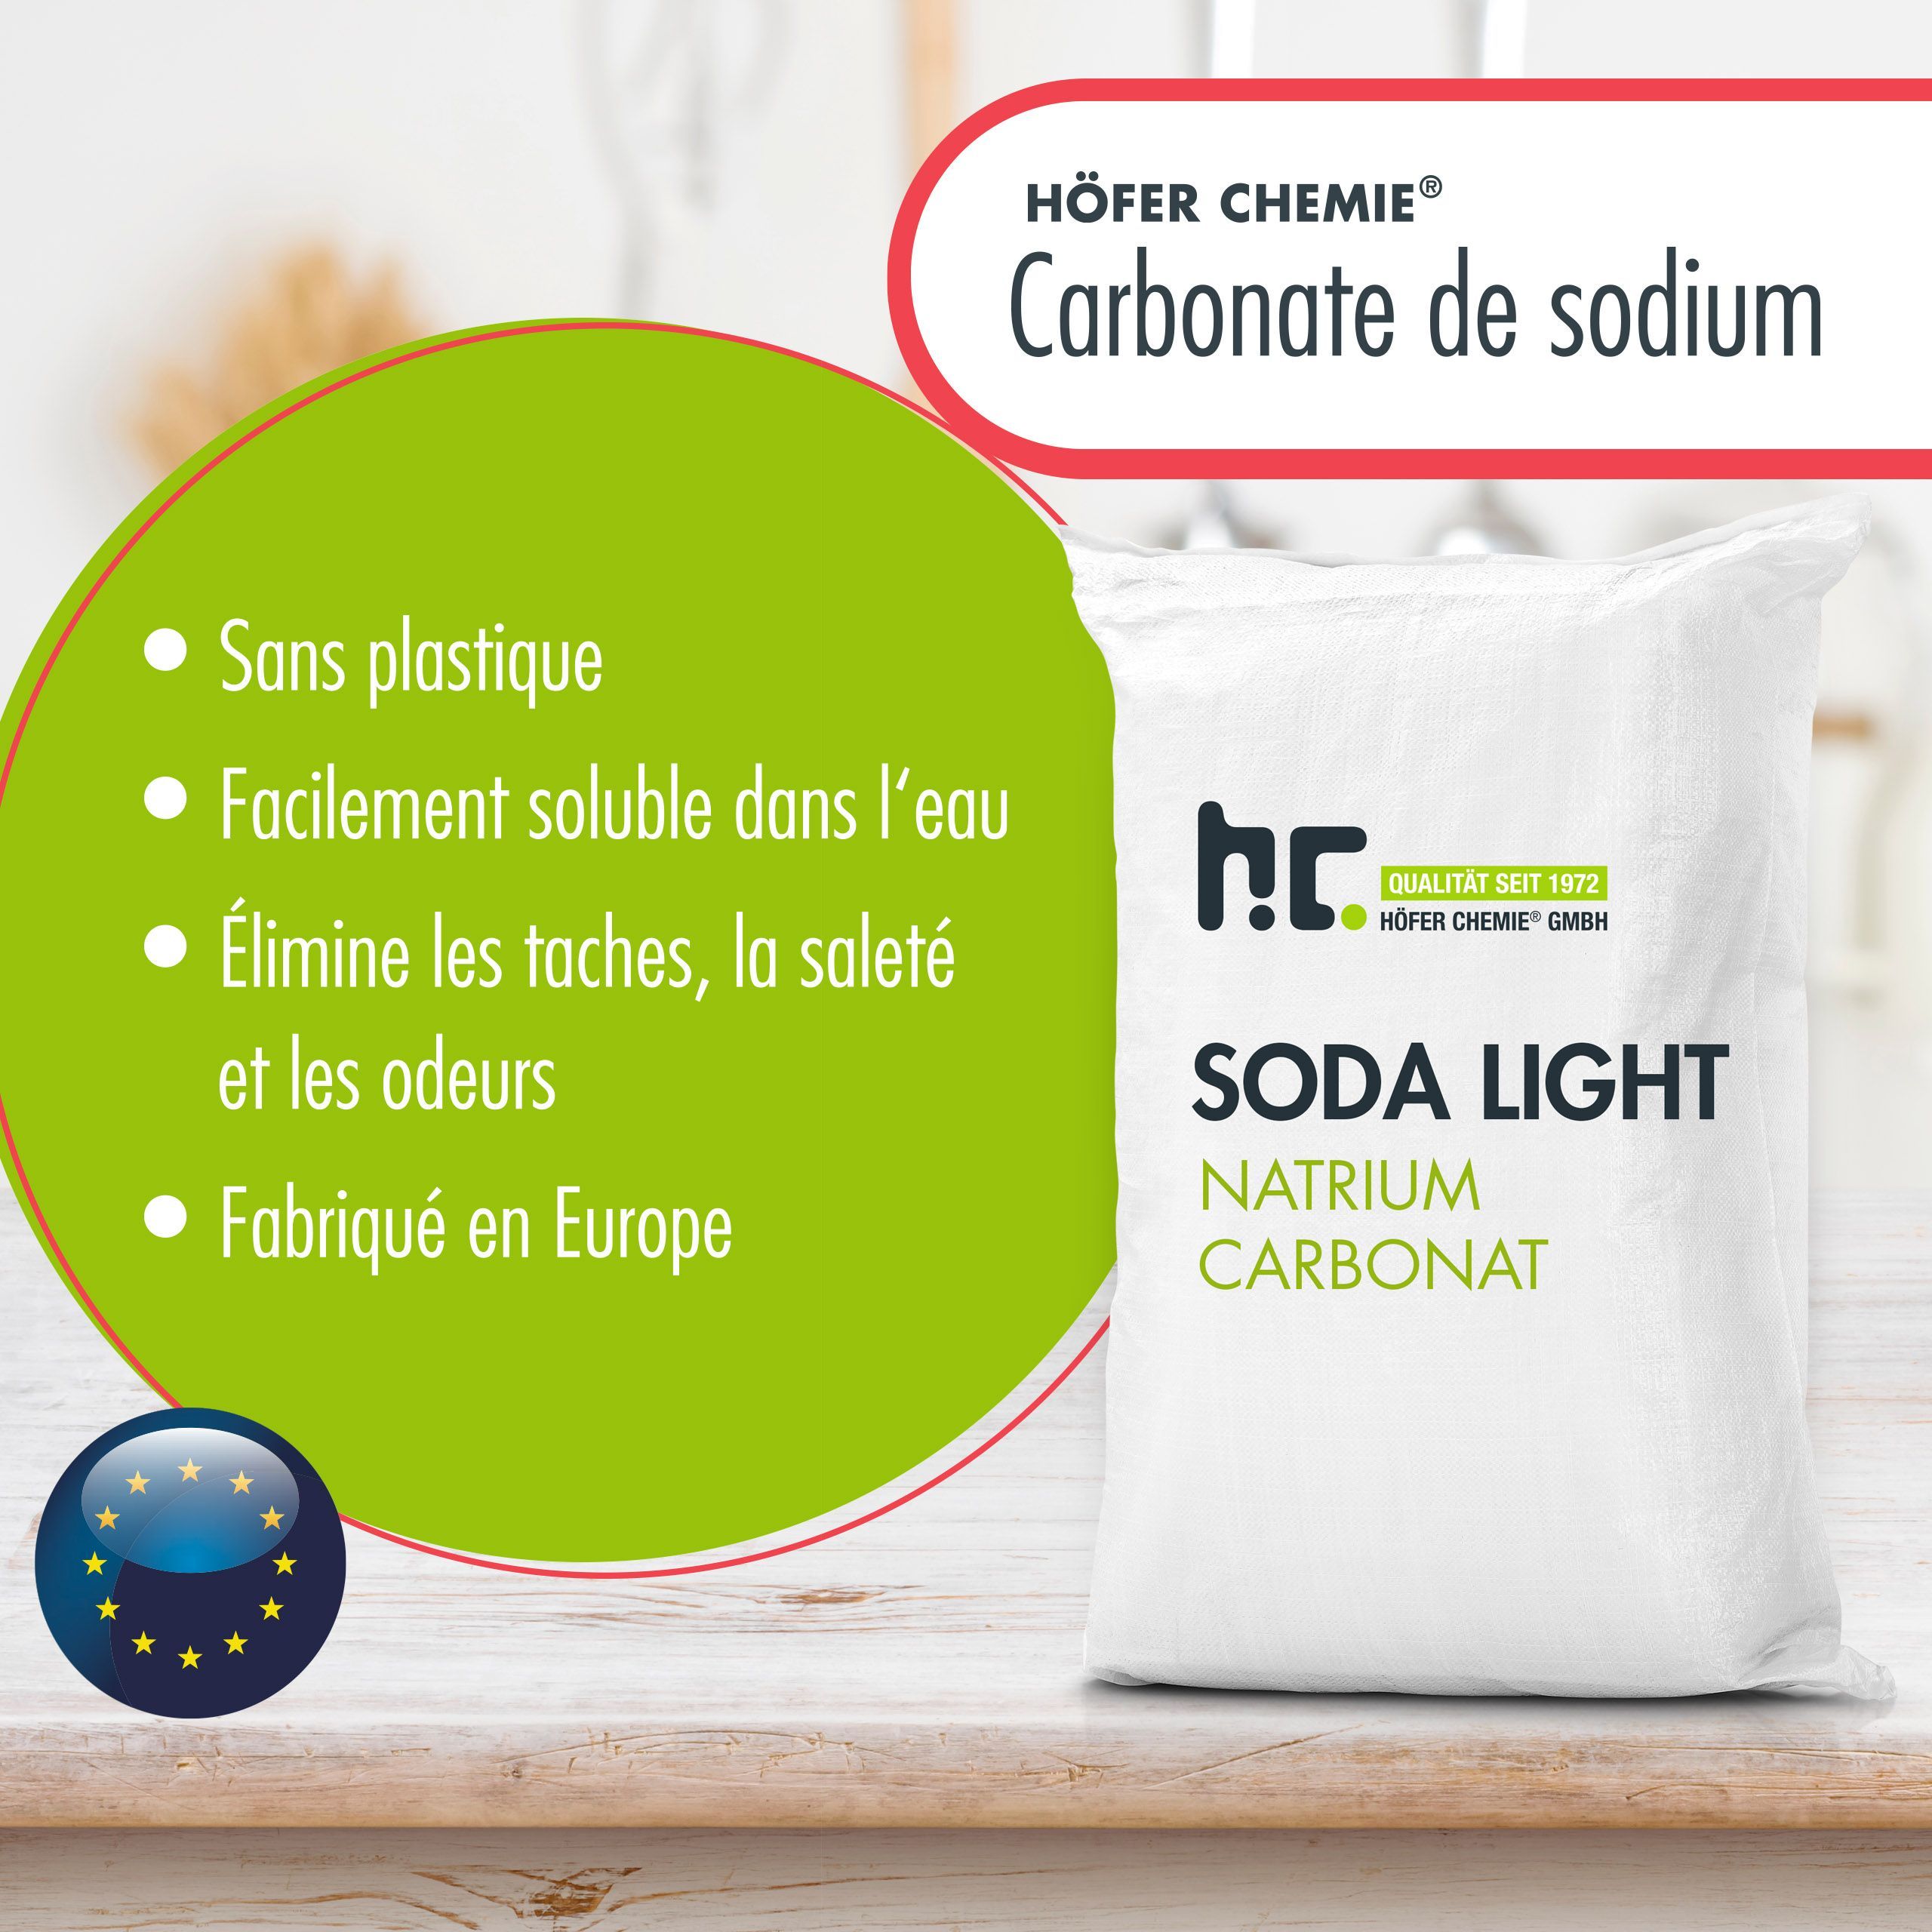 25 kg Natriumcarbonat (Soda) leicht technische Qualität